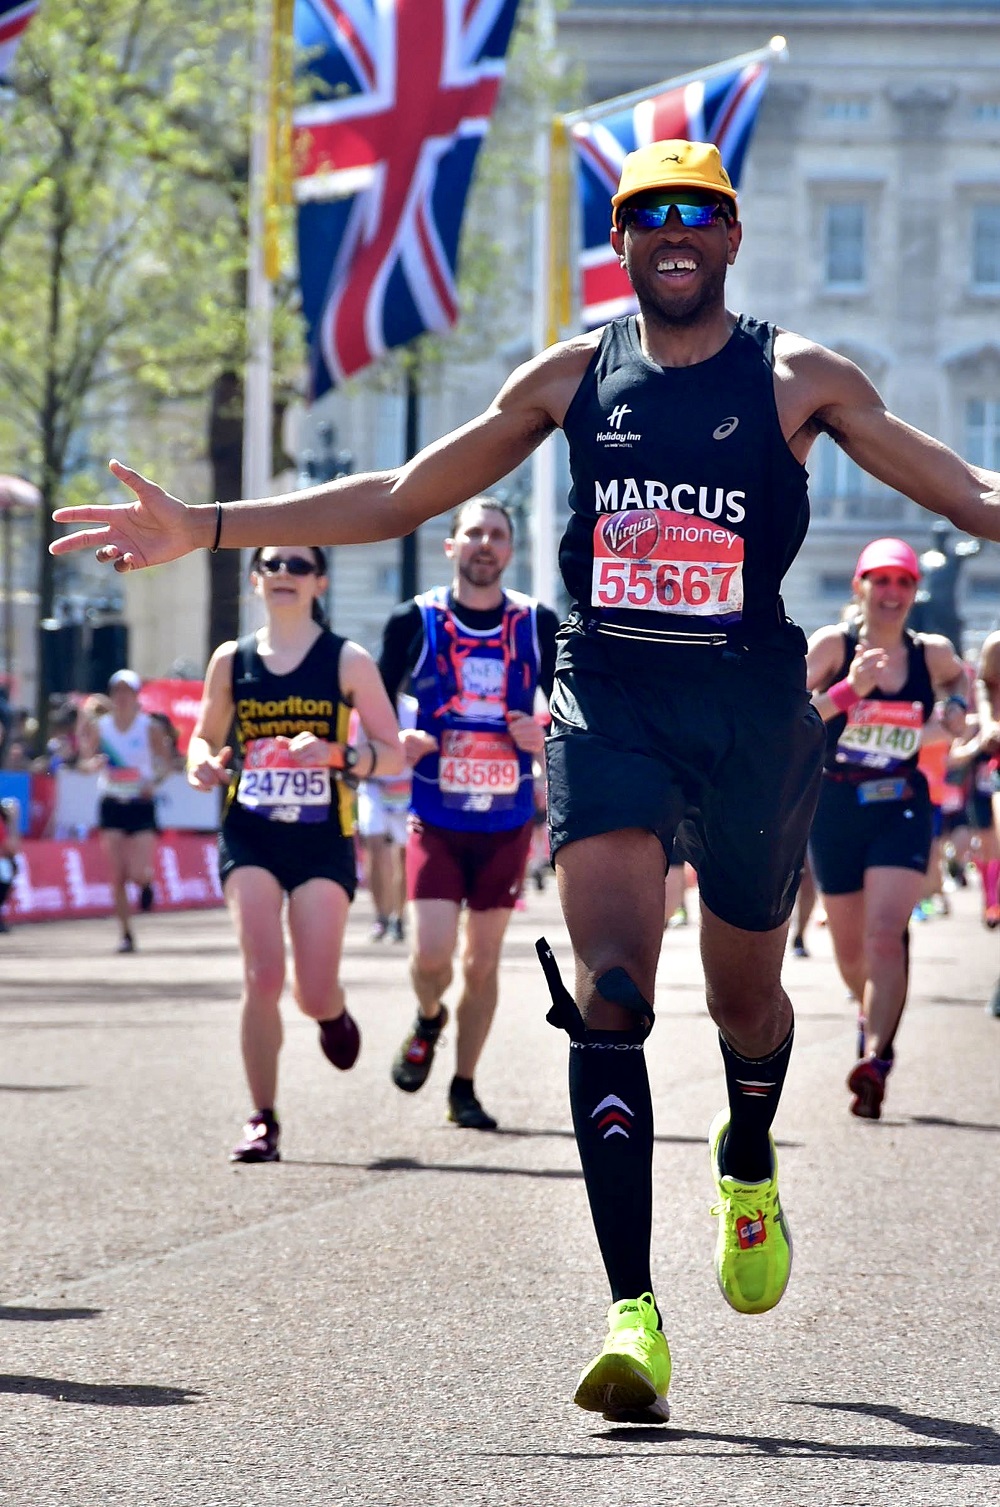 A proud marathon addict, Marcus has completed 20 marathons so far...